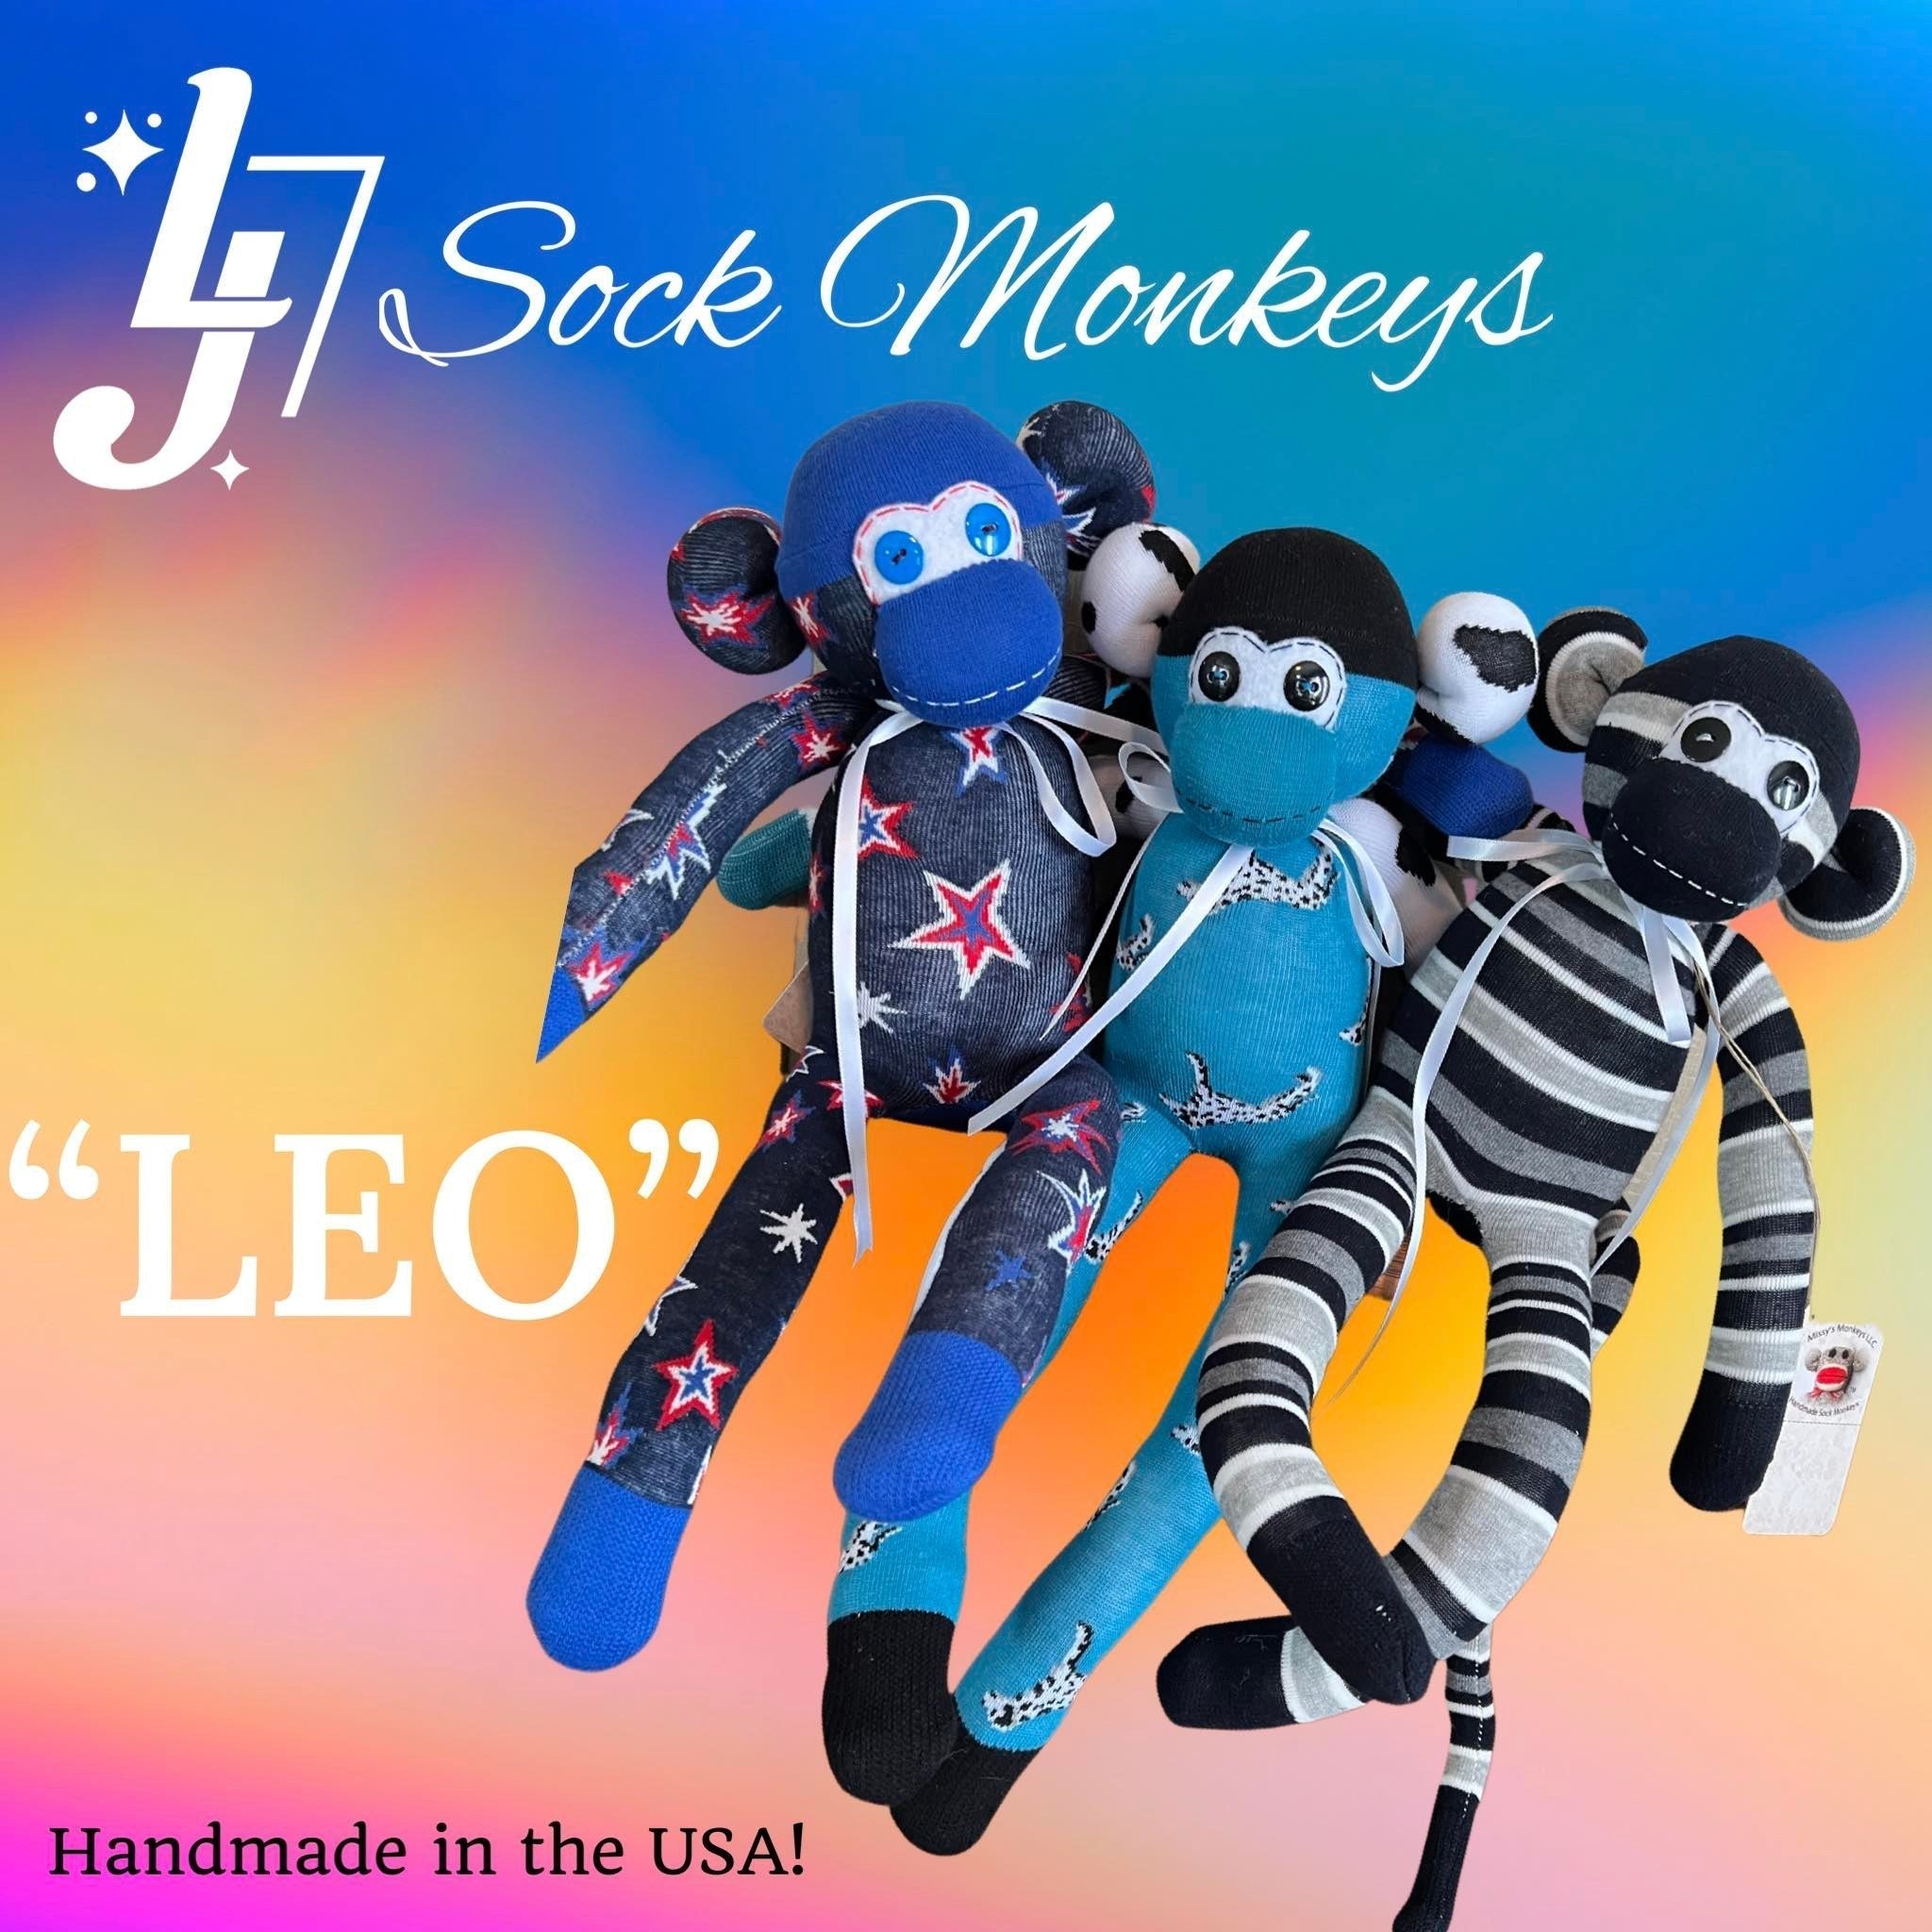 "LEO" Sock Monkey - ABSOLUT. Pride